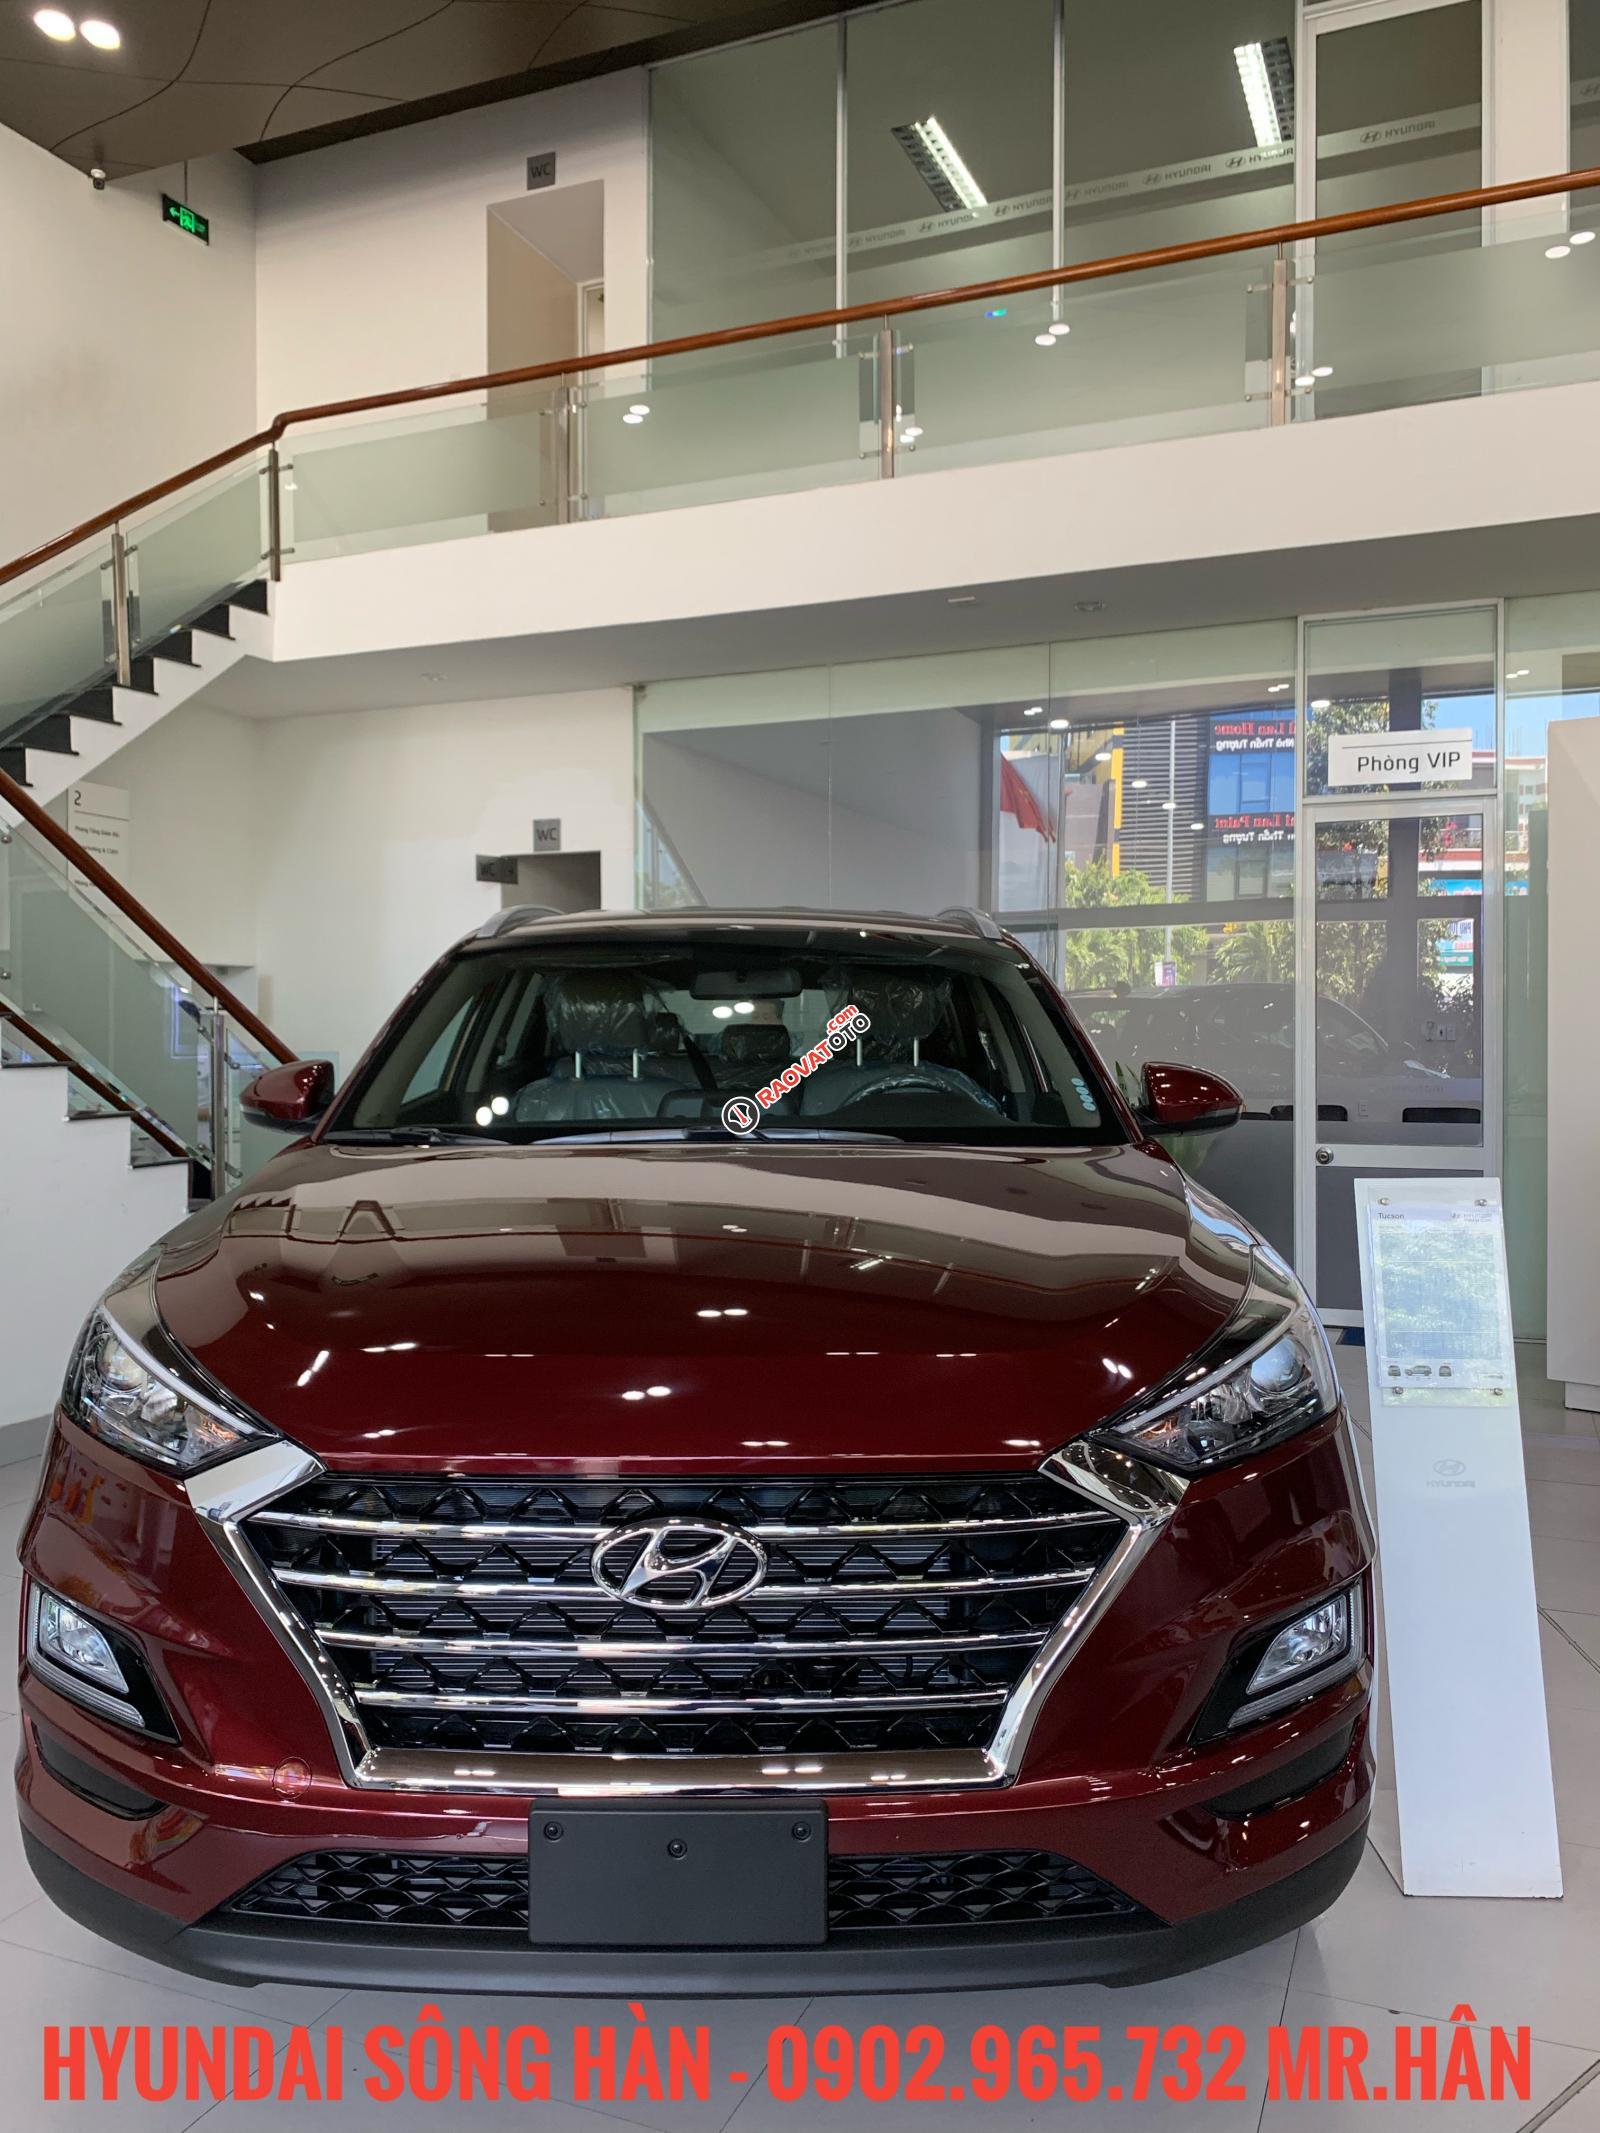 Bán xe Hyundai Tucson đời 2019, màu đỏ - giao ngay, hỗ trợ vay vốn 80% LH: 0902.965.732 Hữu Hân-1